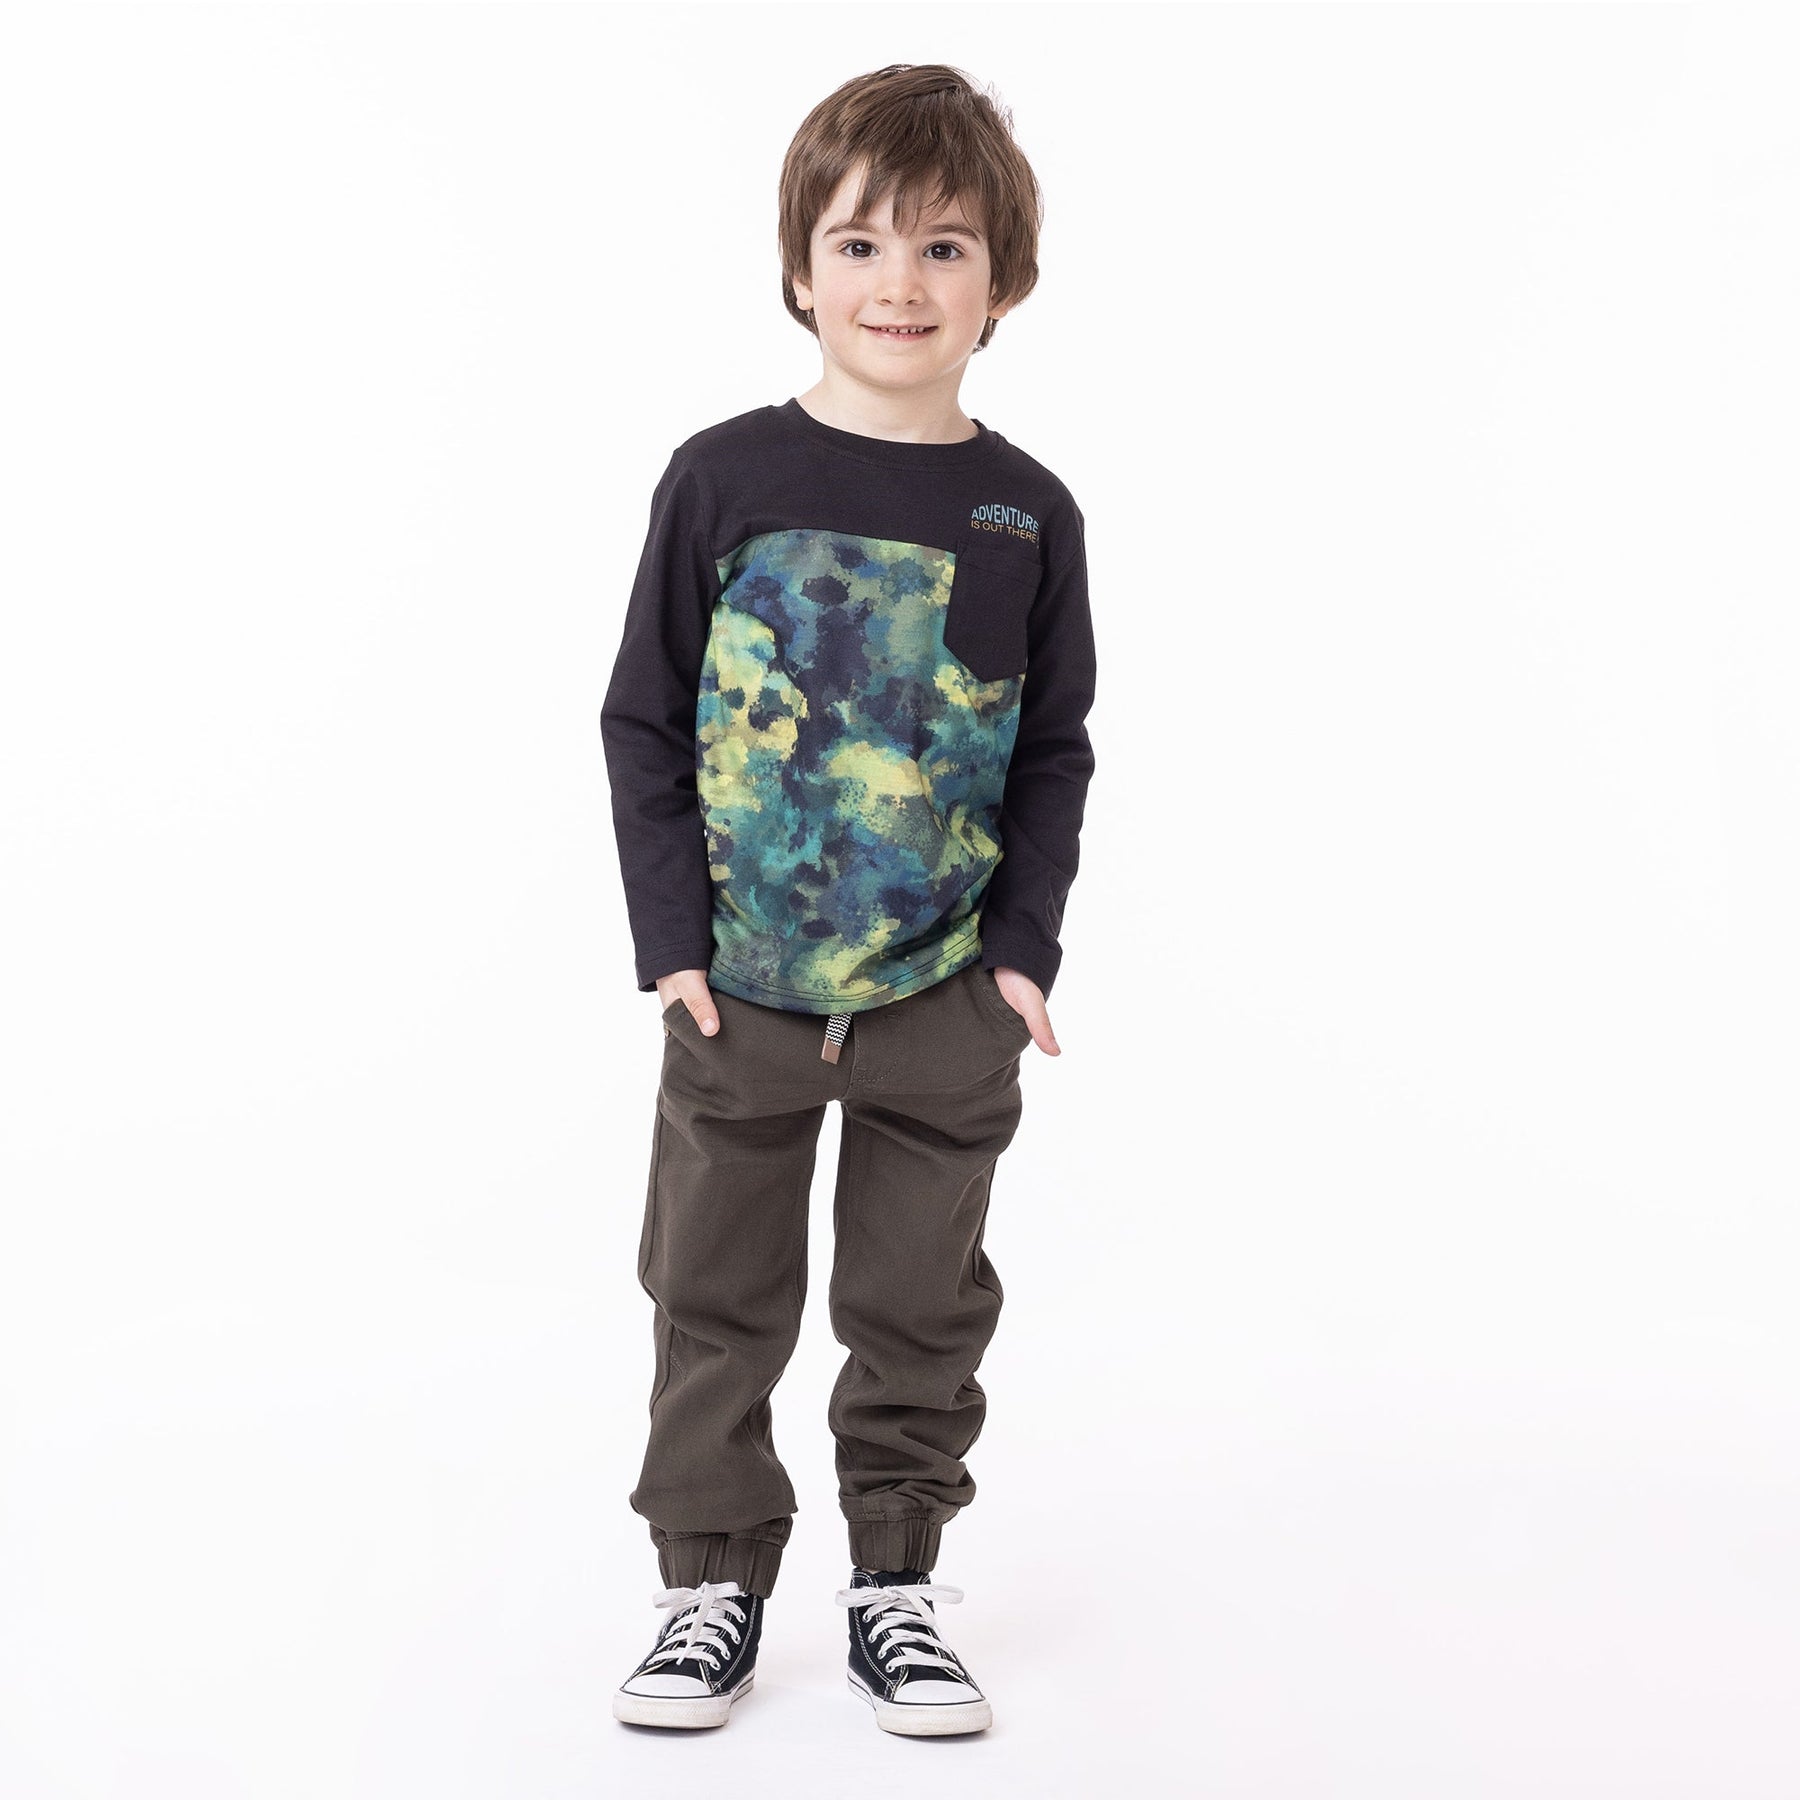 Chandail manches longues pour enfant garçon par Nanö | F2307-04 Noir | Boutique Flos, vêtements mode pour bébés et enfants